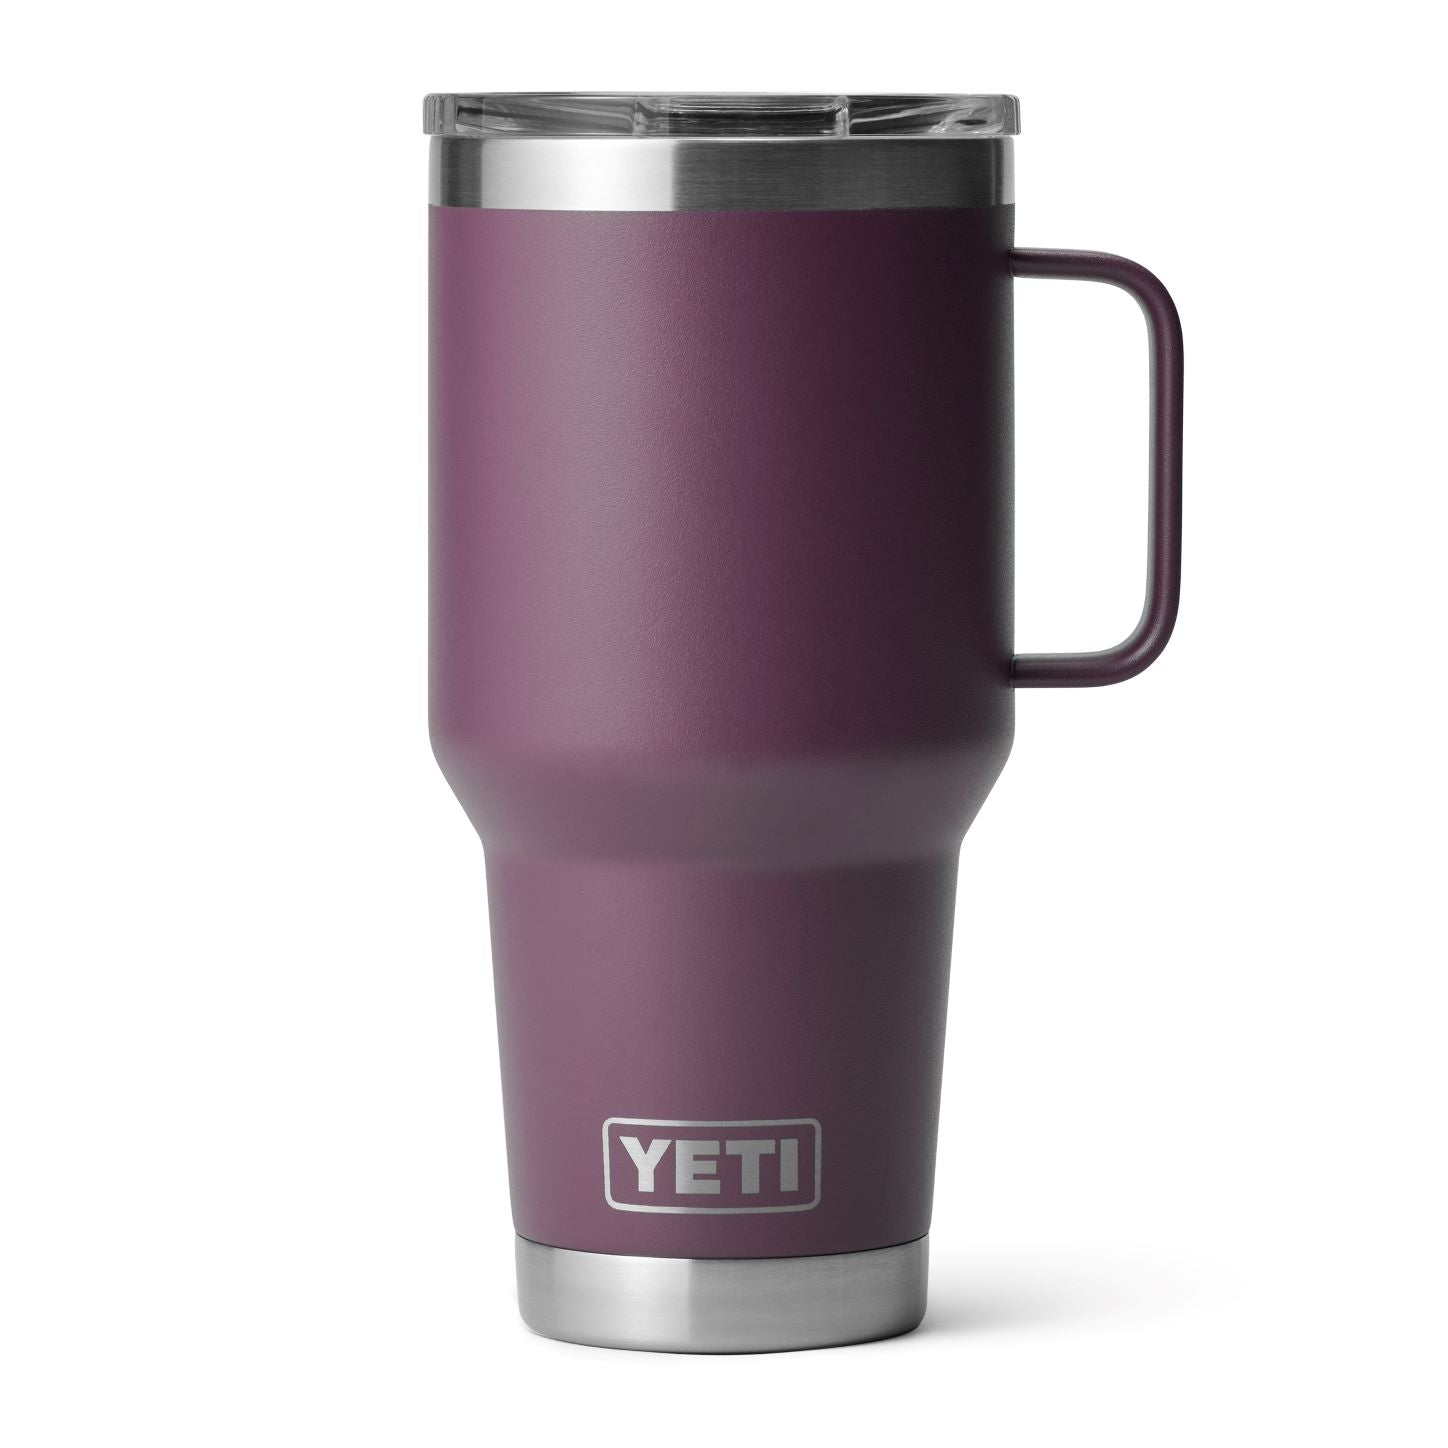 'Yeti' 30 oz. Rambler Travel Mug - Nordic Purple